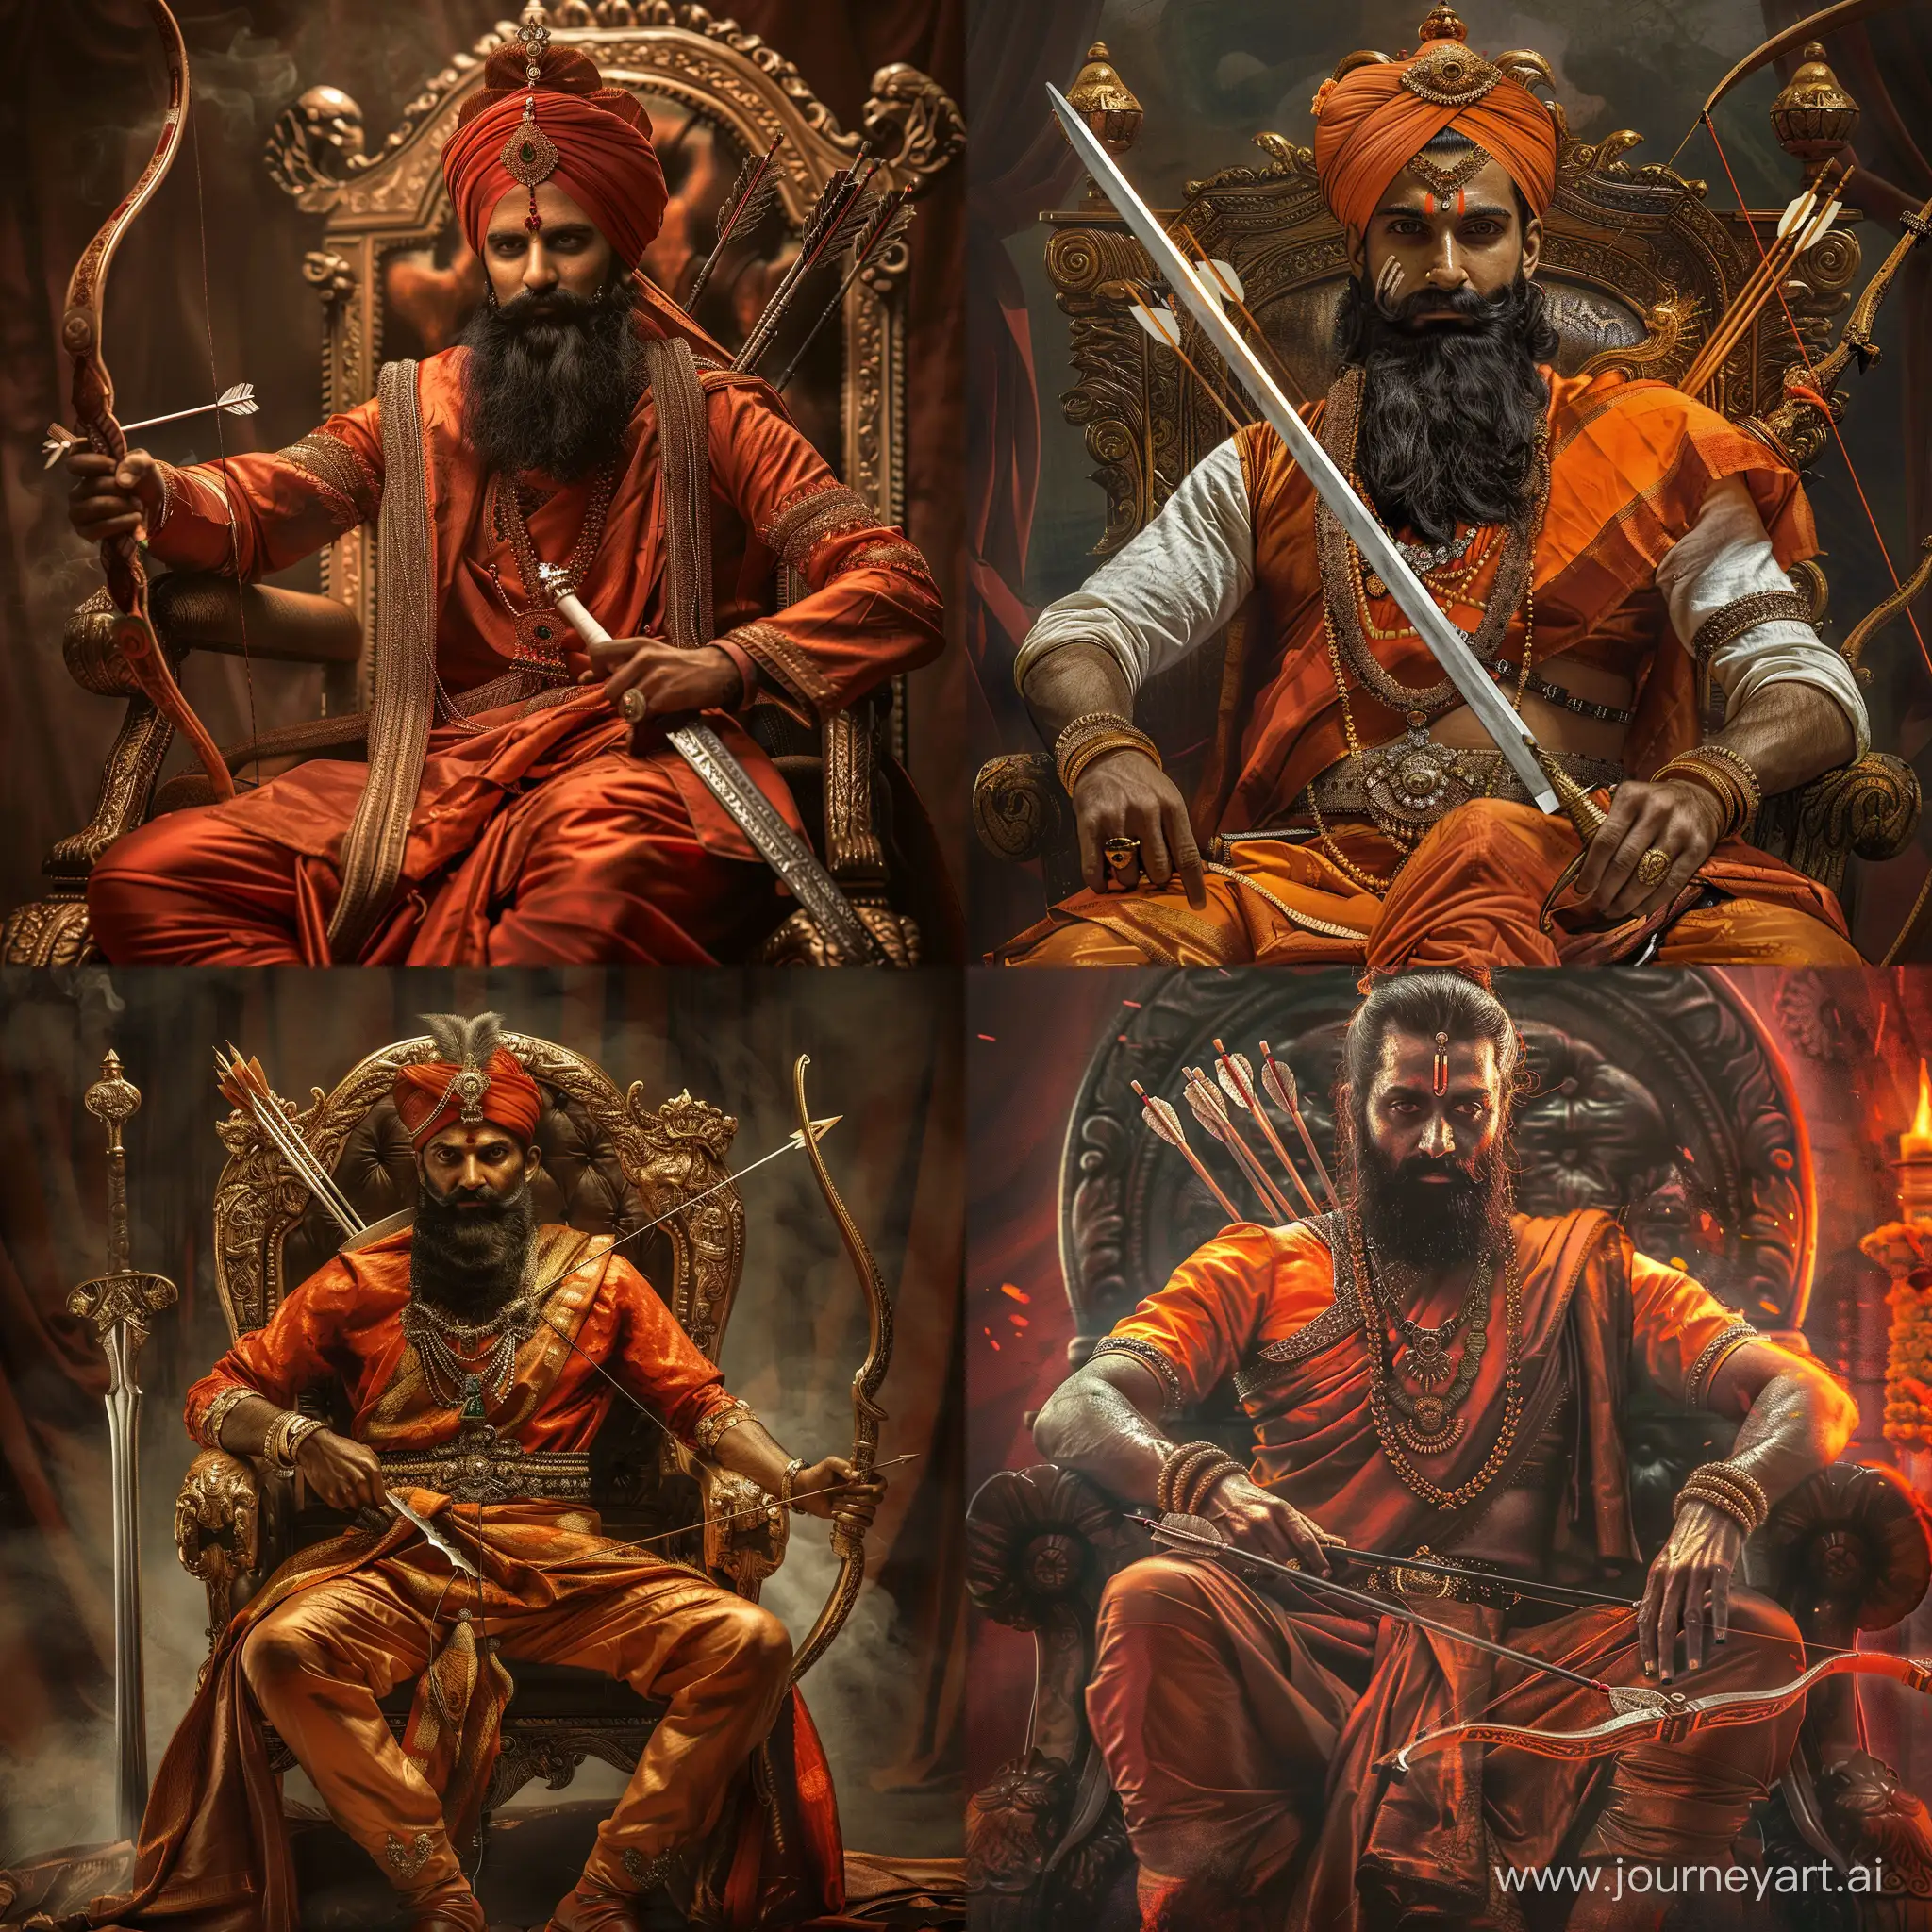 Chatrapati-Shivaji-Maharaj-Legendary-Warrior-King-with-Sword-Bow-and-Throne